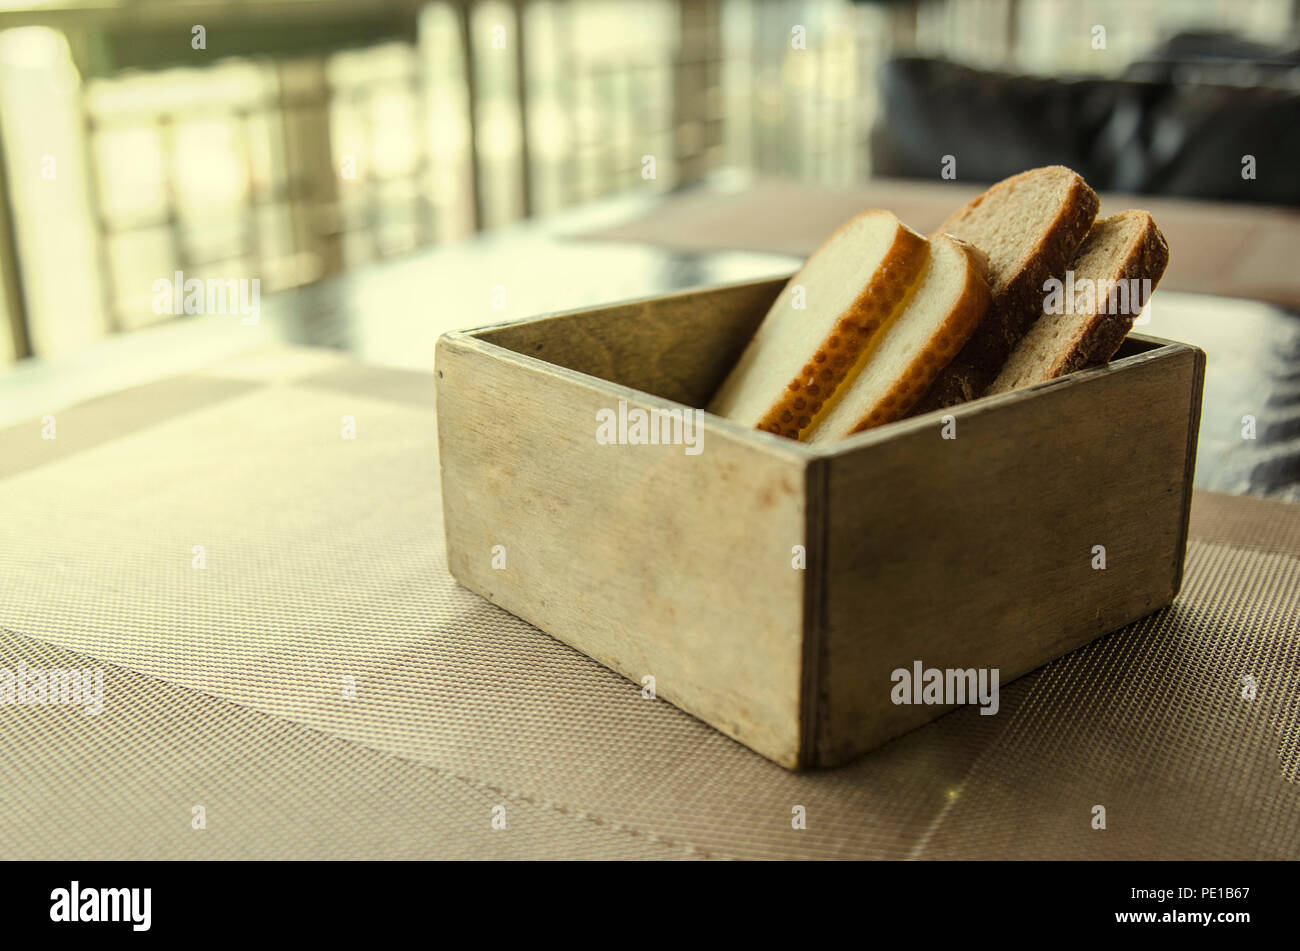 In Holz geschnitten Brot Brot Box. Vier Stücke Brot in einem schönen breadbox auf einem Tisch in einem Café. Frisches Brot in Holz- Brot Box mit Hintergrund Stockfoto